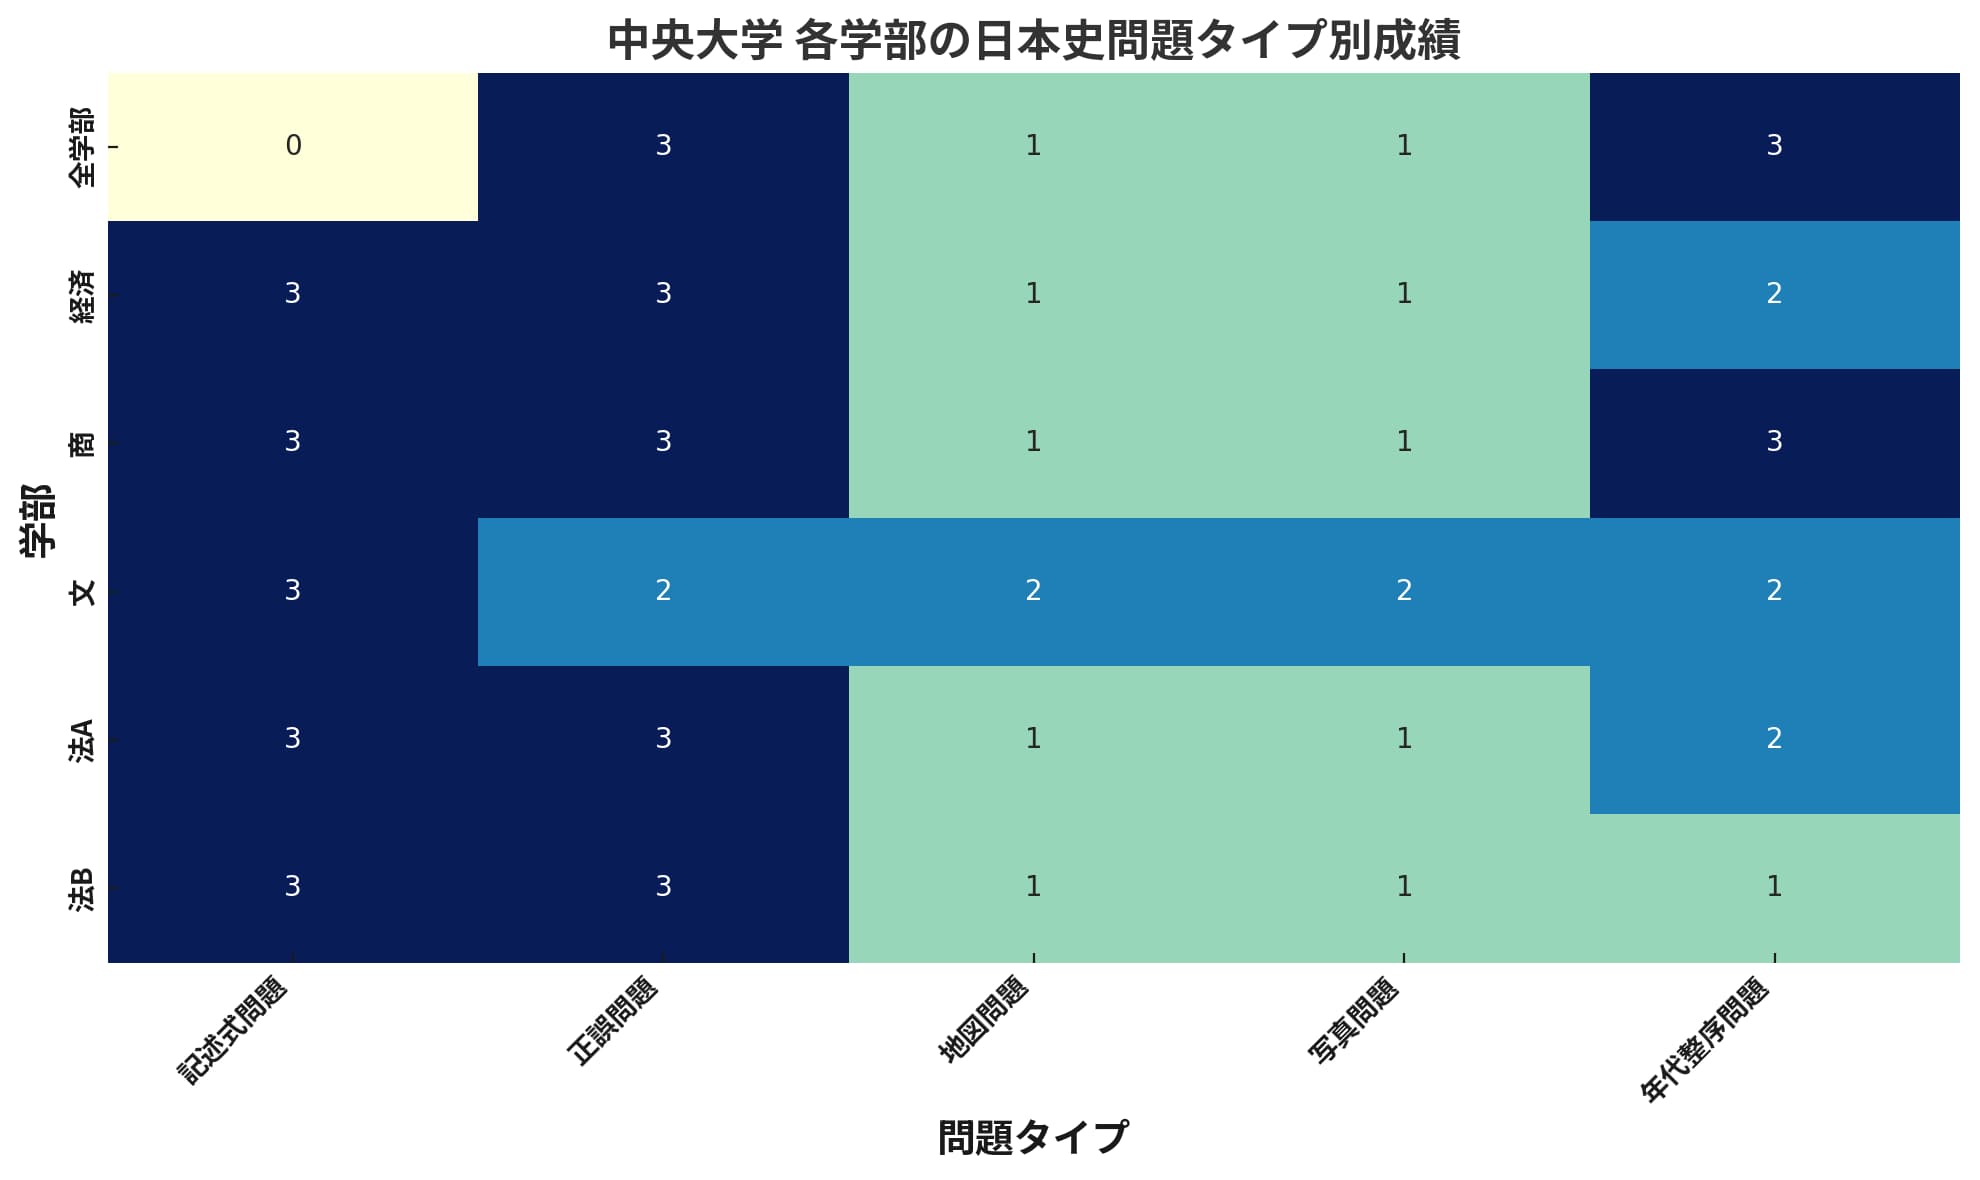 中央大学の各学部における日本史の問題タイプ別の成績を示すヒートマップ